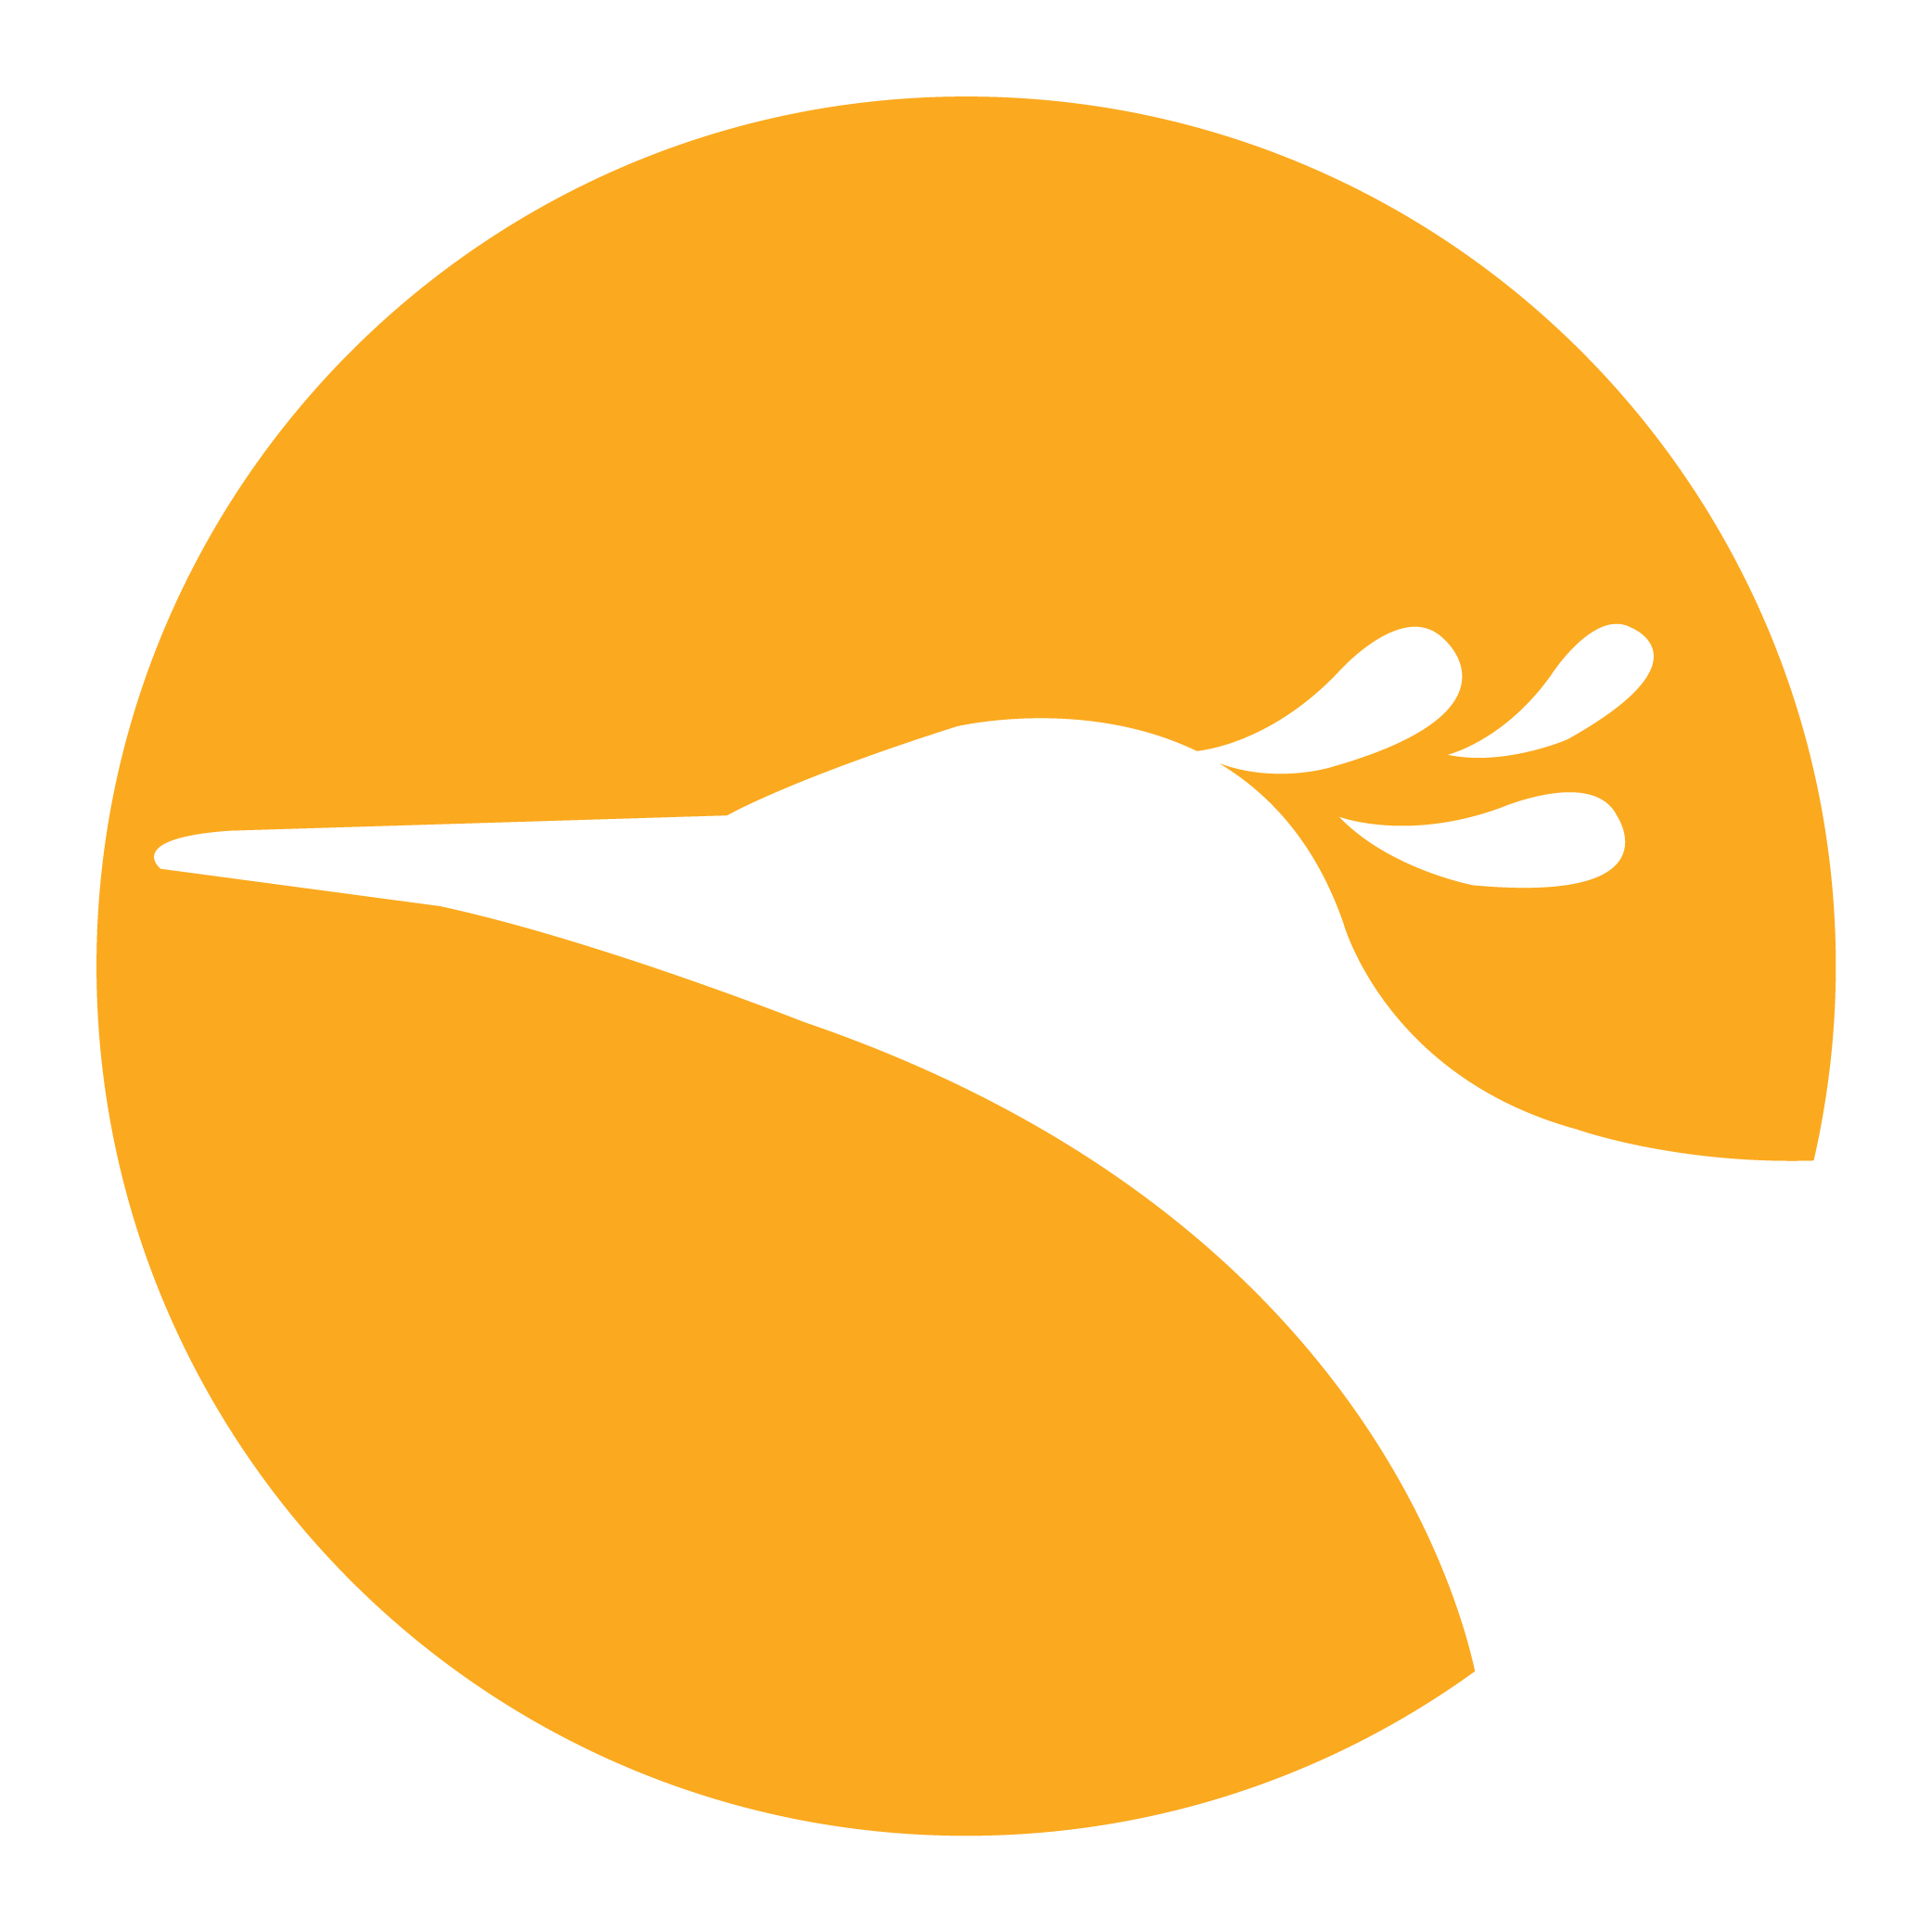 Kindcentrum De Vuurvogel logo